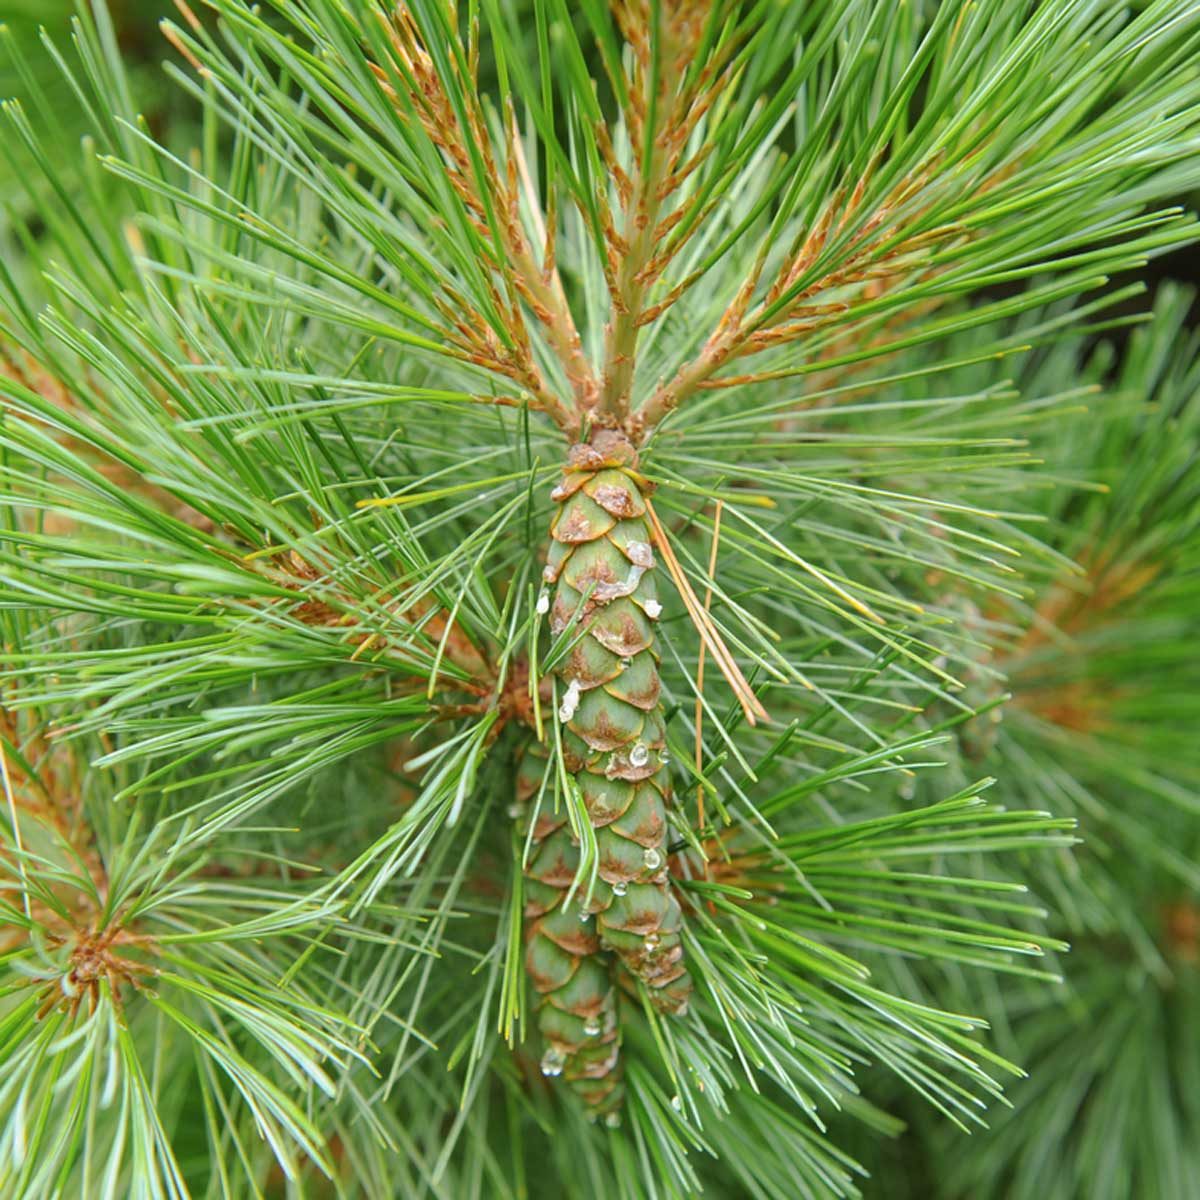 Eastern white pine (Pinus strobus)